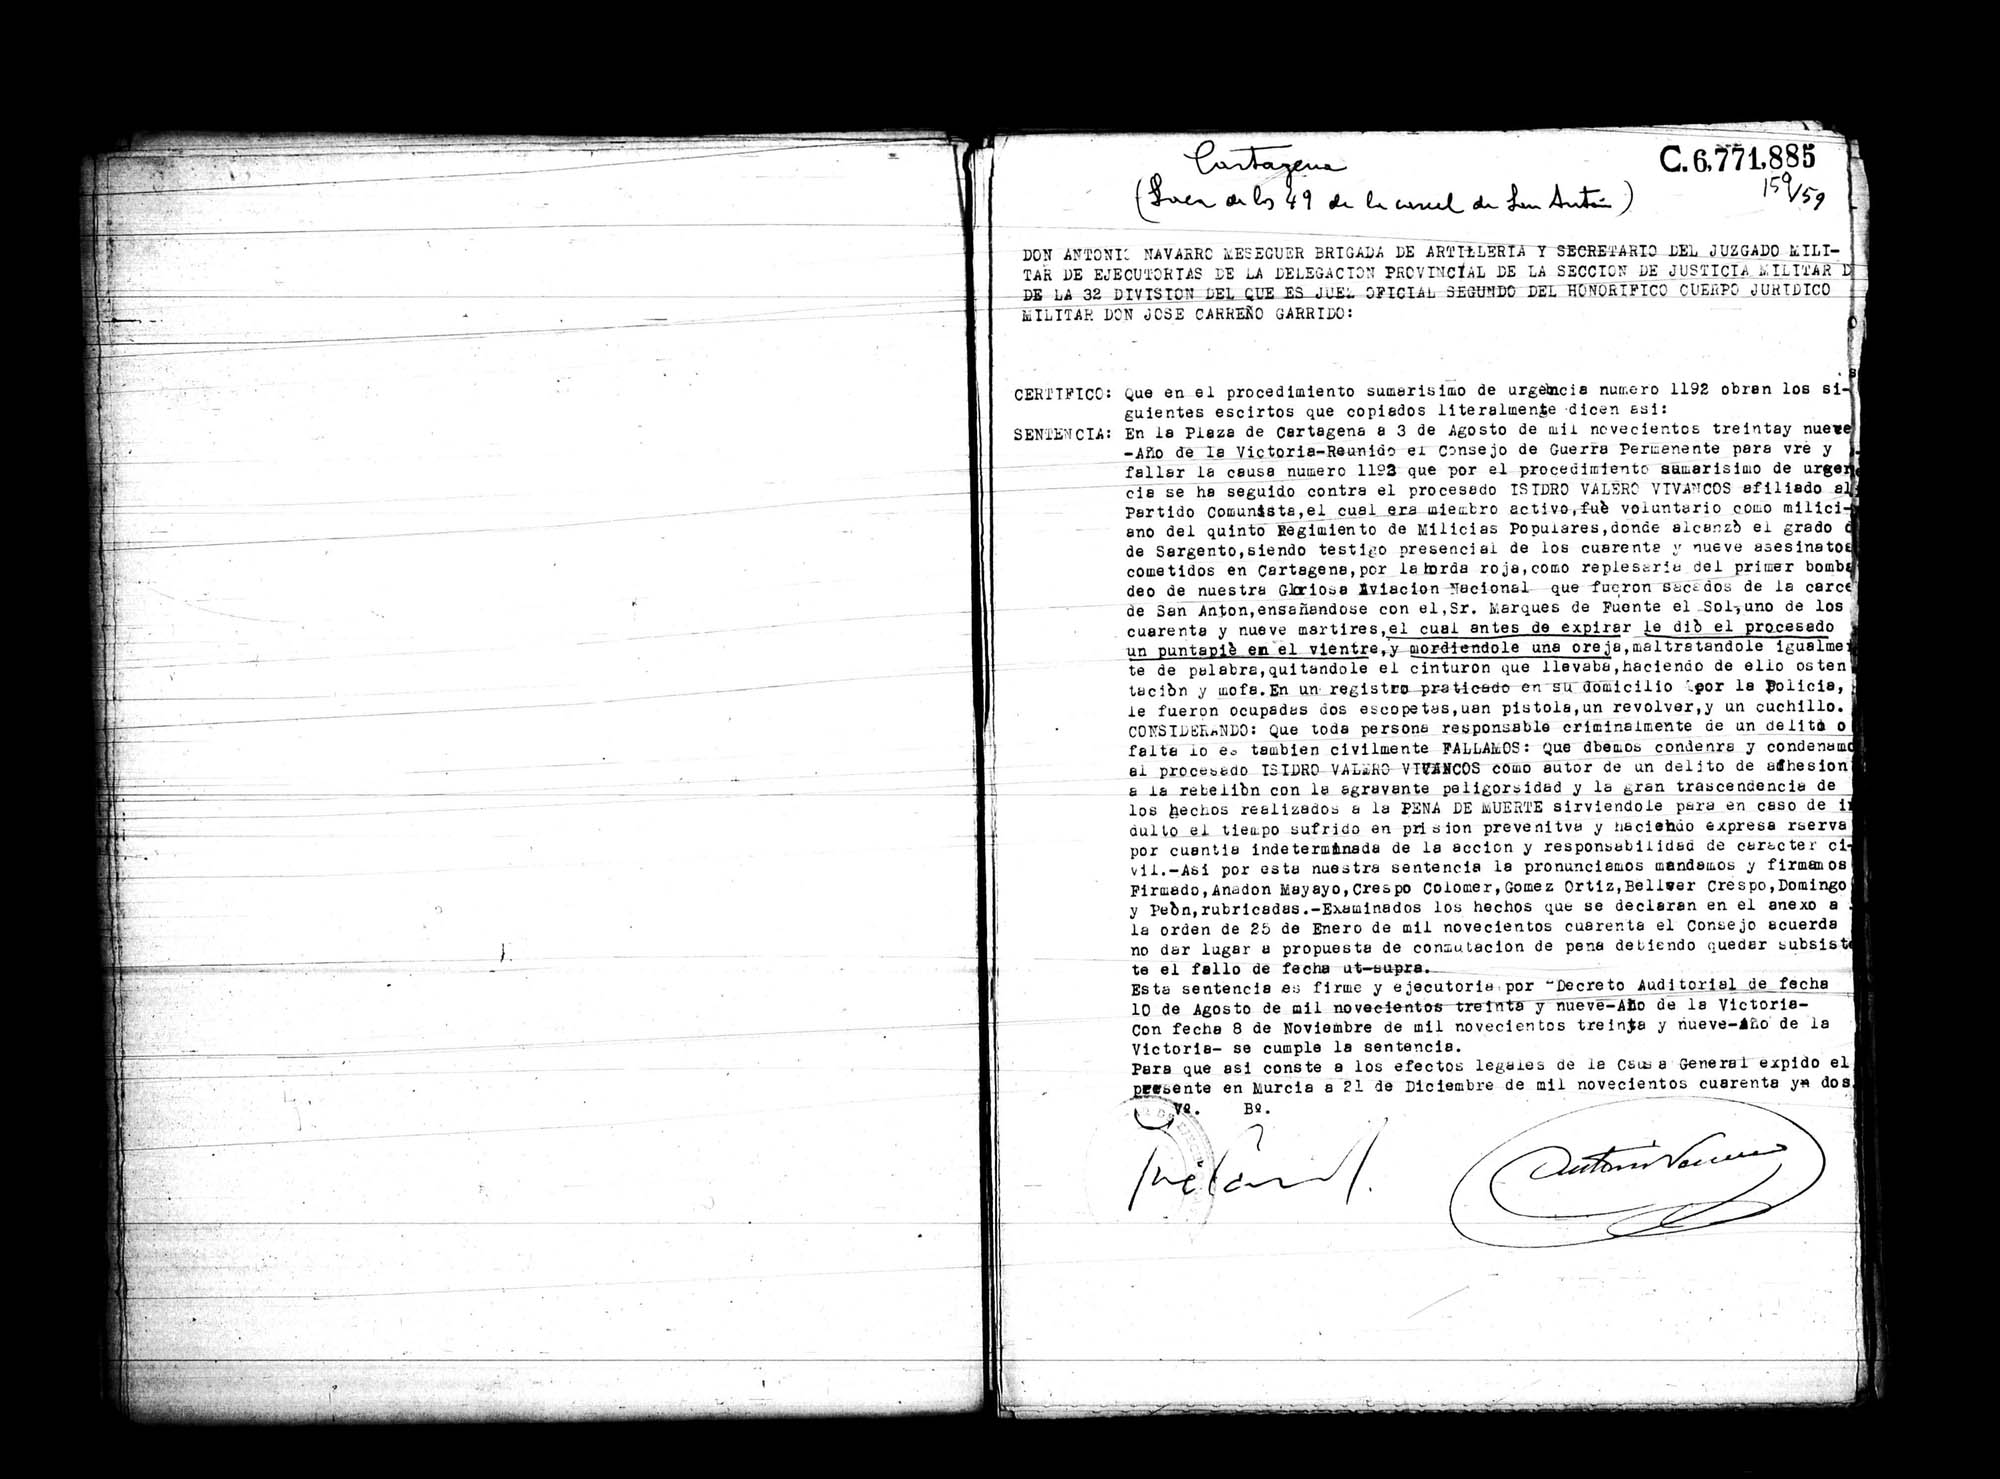 Certificado de la sentencia pronunciada contra Isidro Valero Vivancos, causa 1192, el 3 de agosto de 1939 en Cartagena.